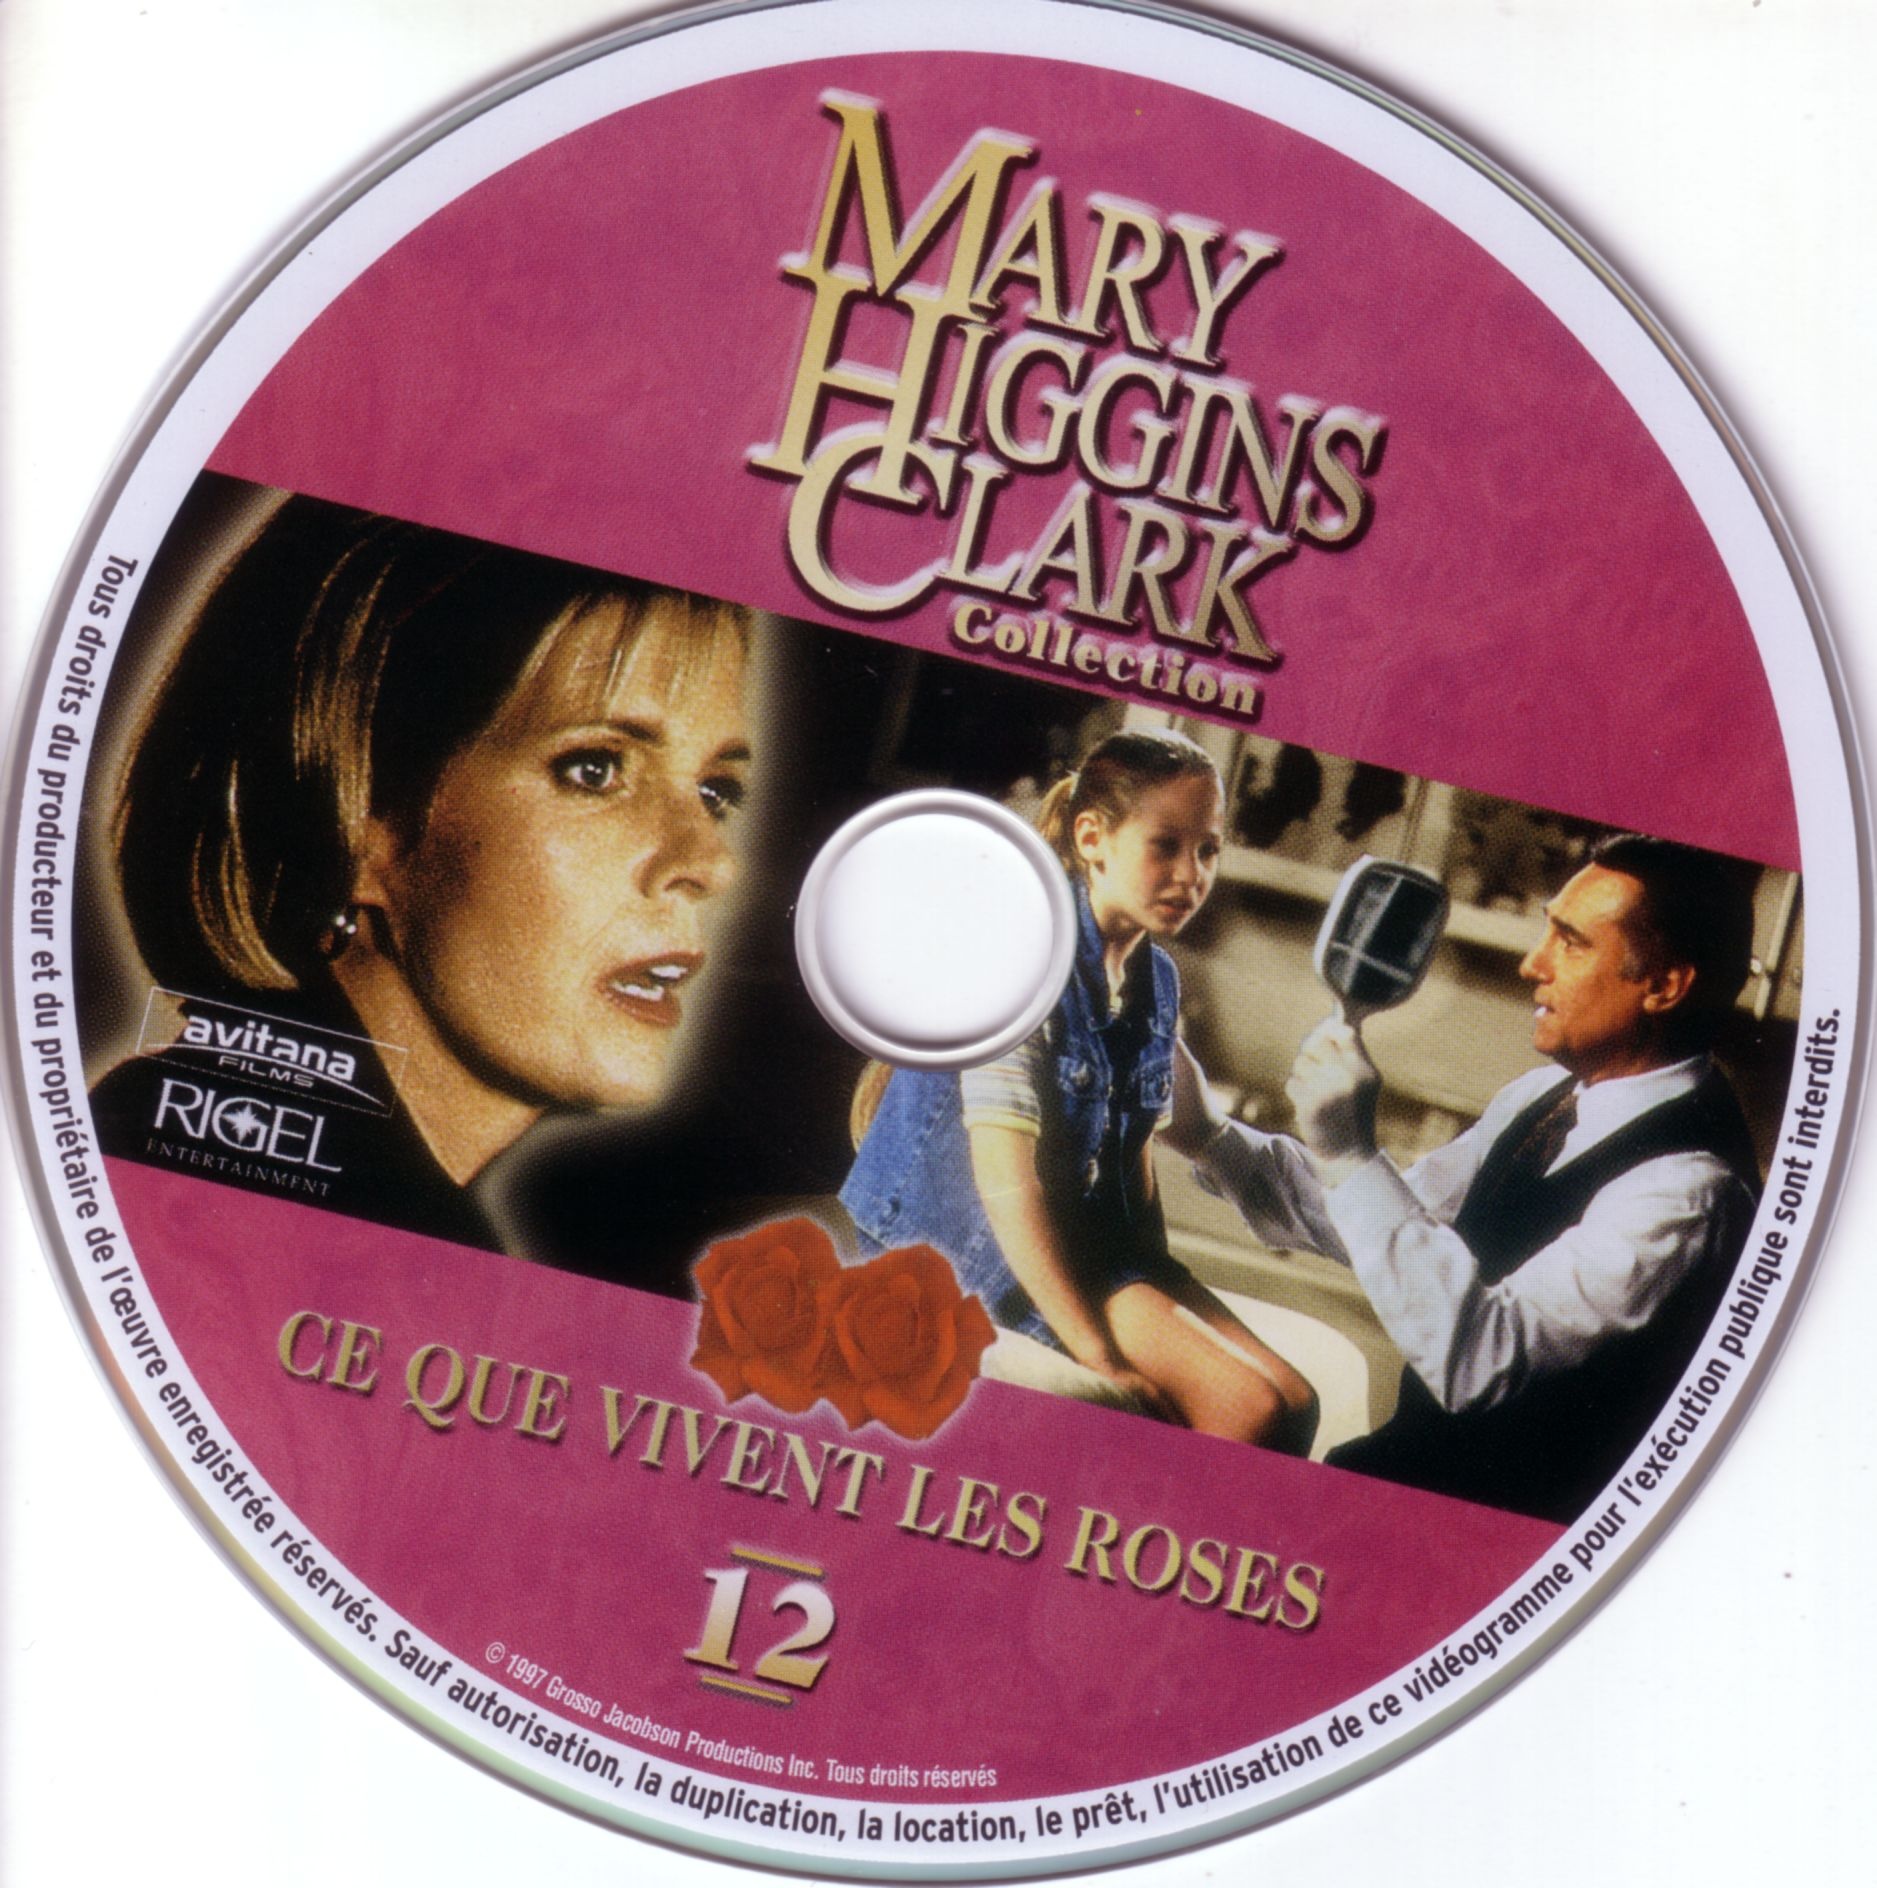 Sticker de Mary Higgins Clark vol 12 - Ce que vivent les Roses - Cinéma Passion